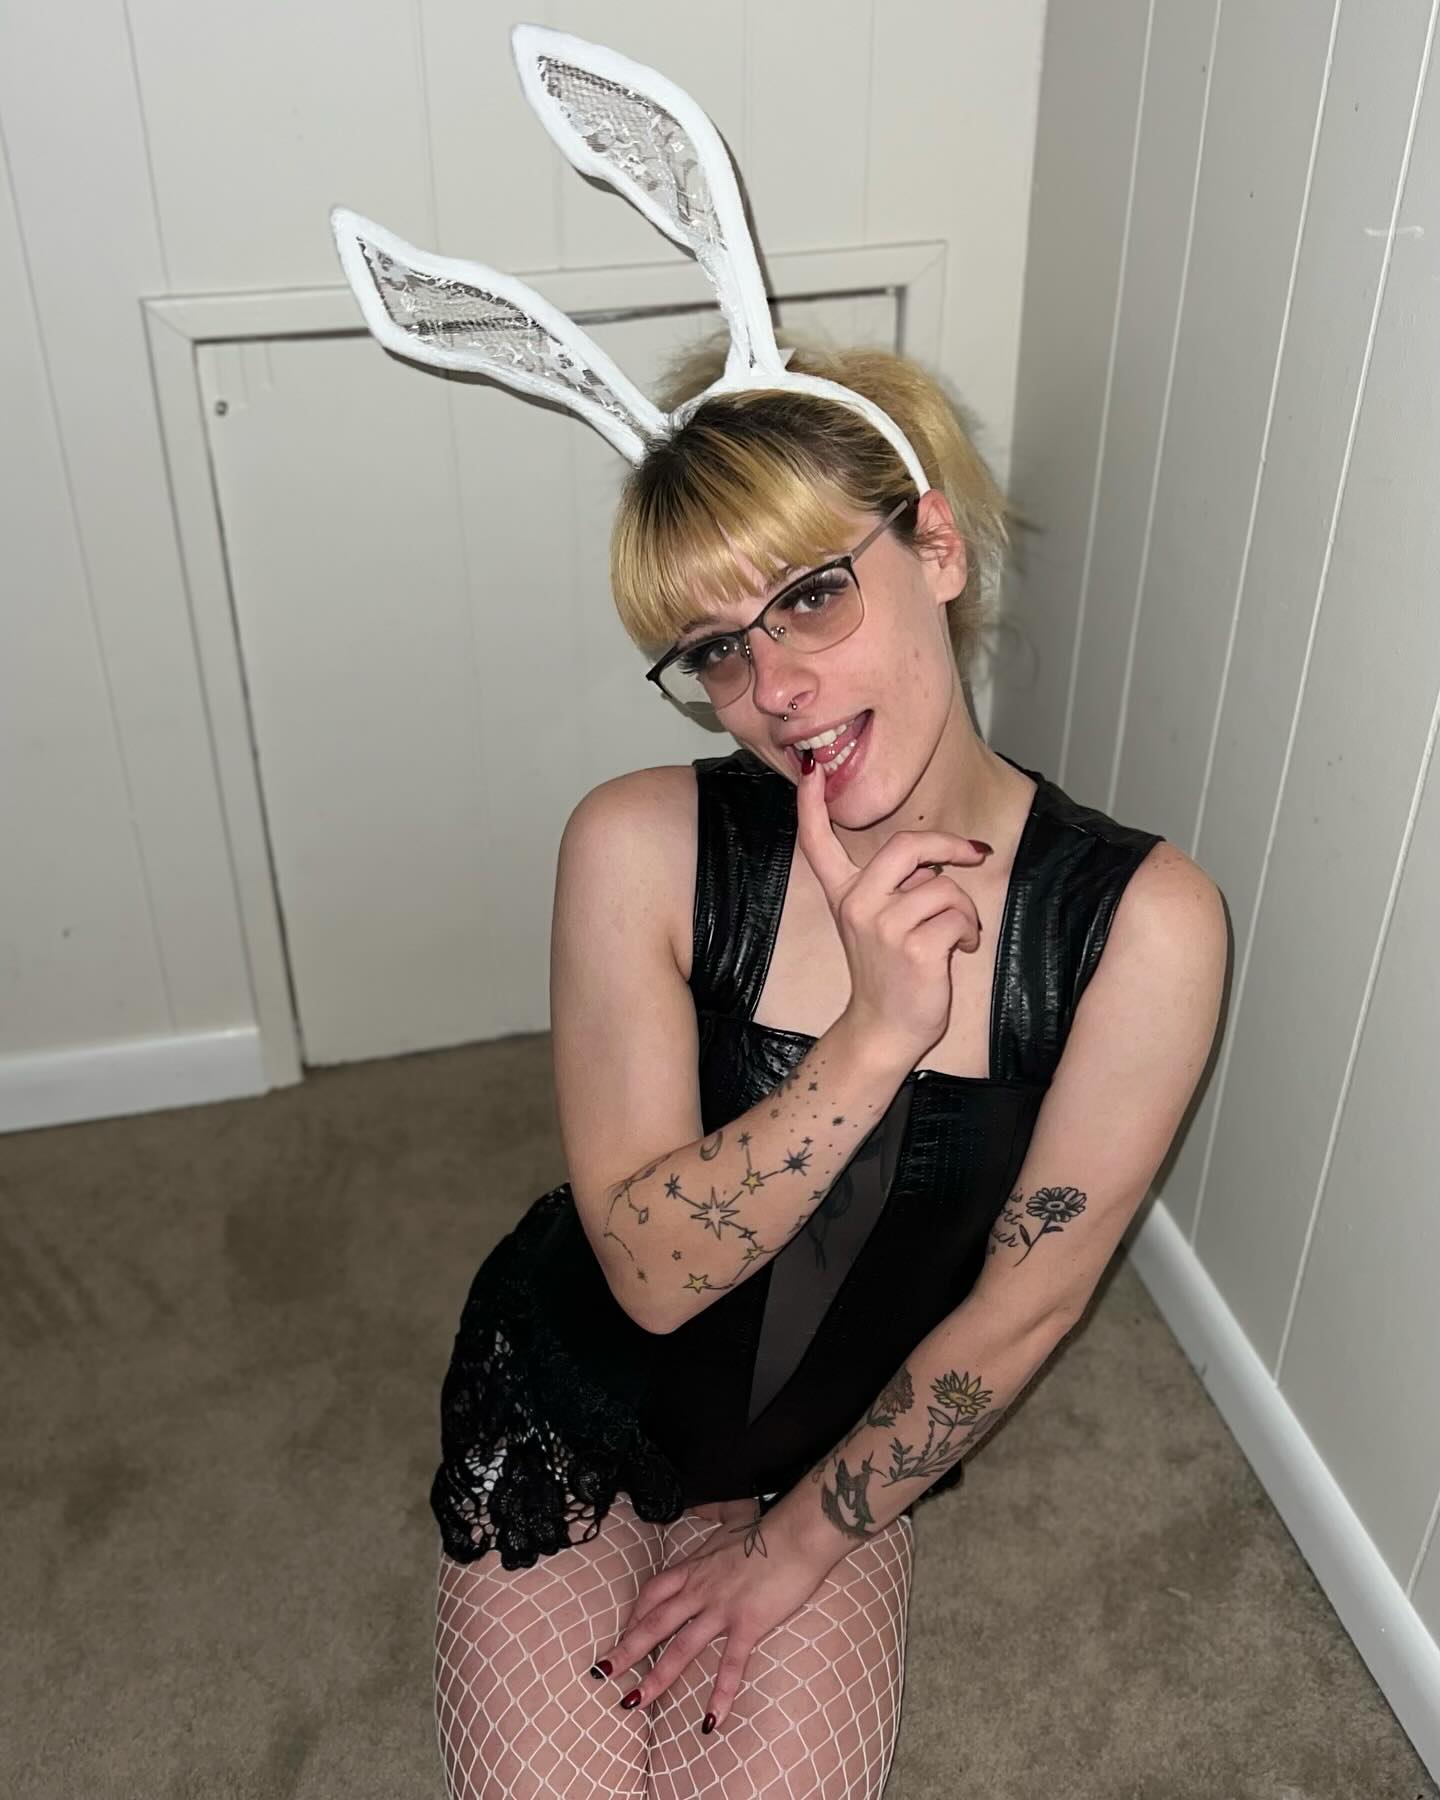 I’m a bunny 🐰 

Spooooky Season